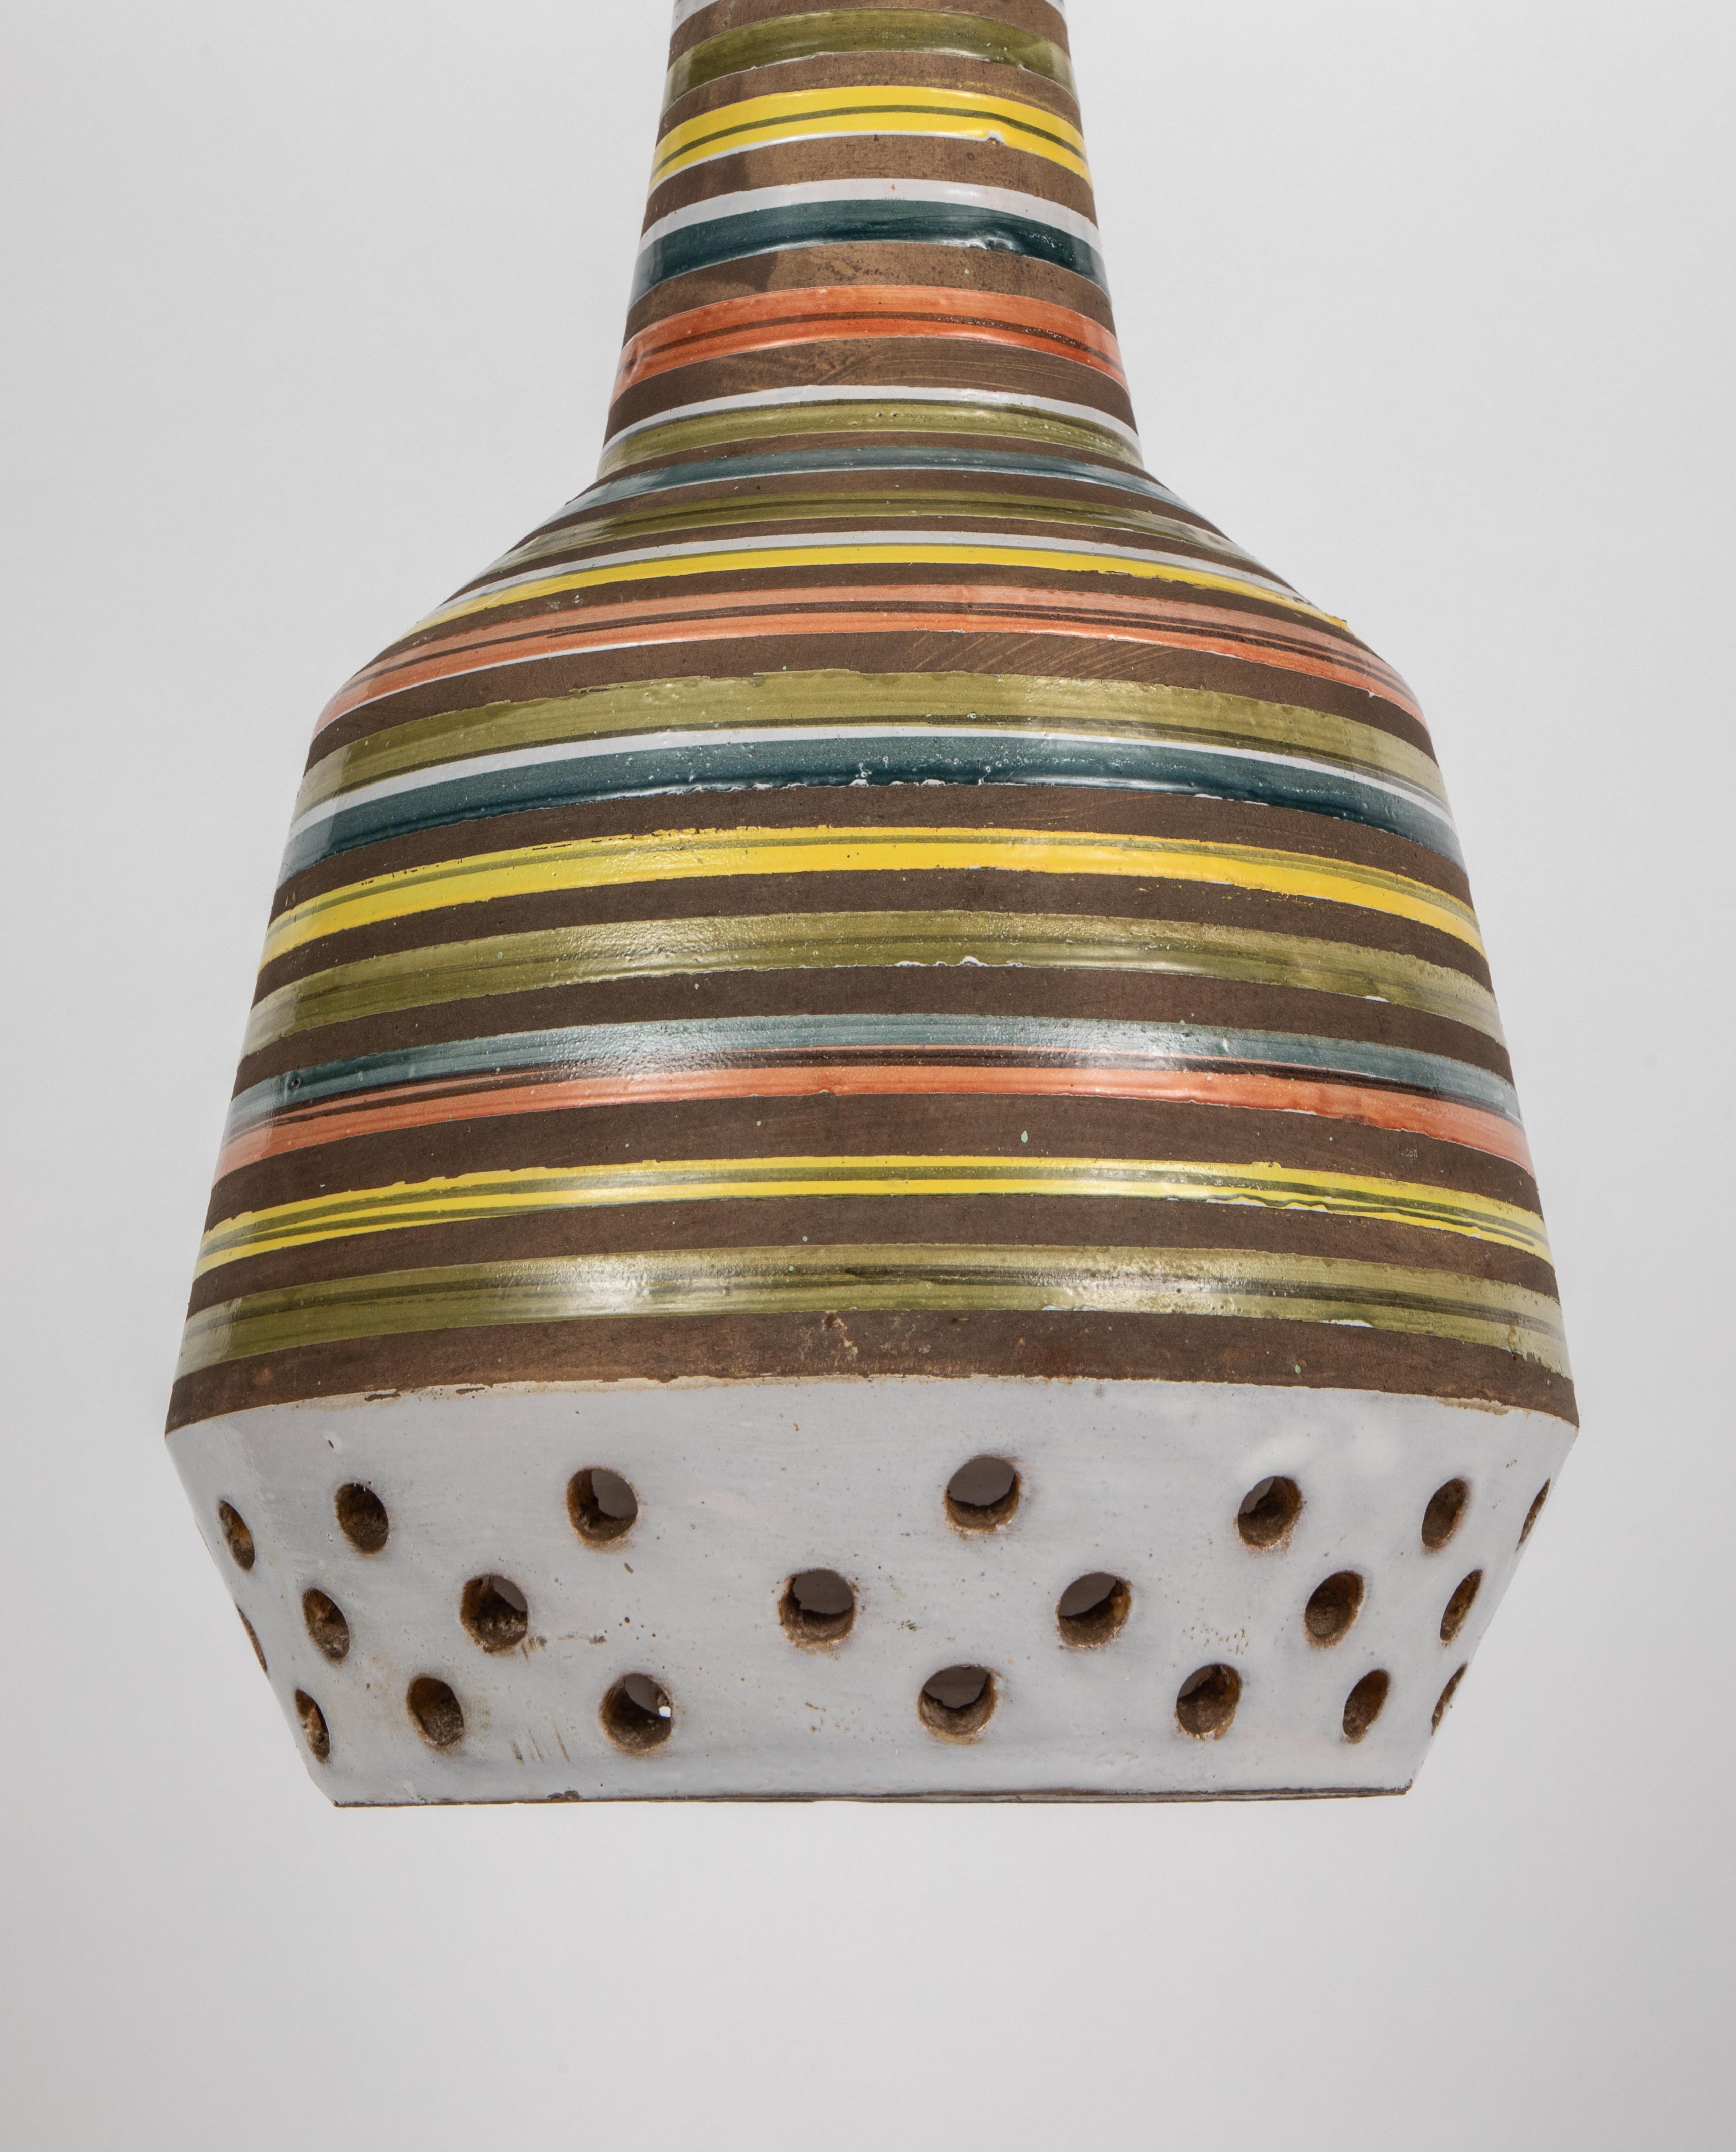 Glazed 1950s Aldo Londi Ceramic Bitossi Pendant Lamp for Italian Raymor